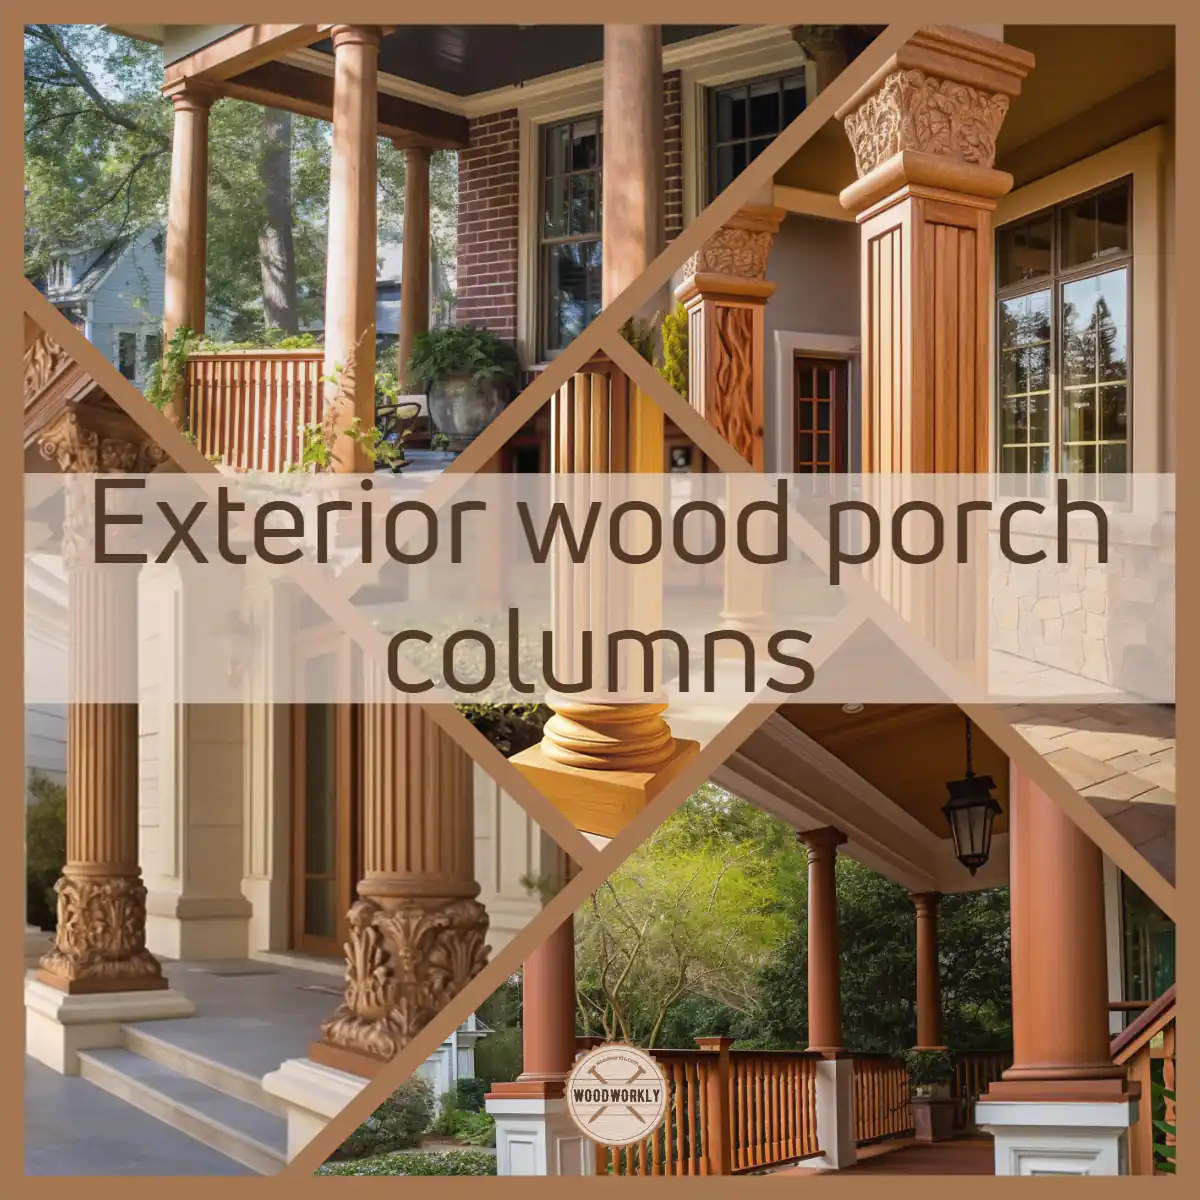 Exterior wood porch columns